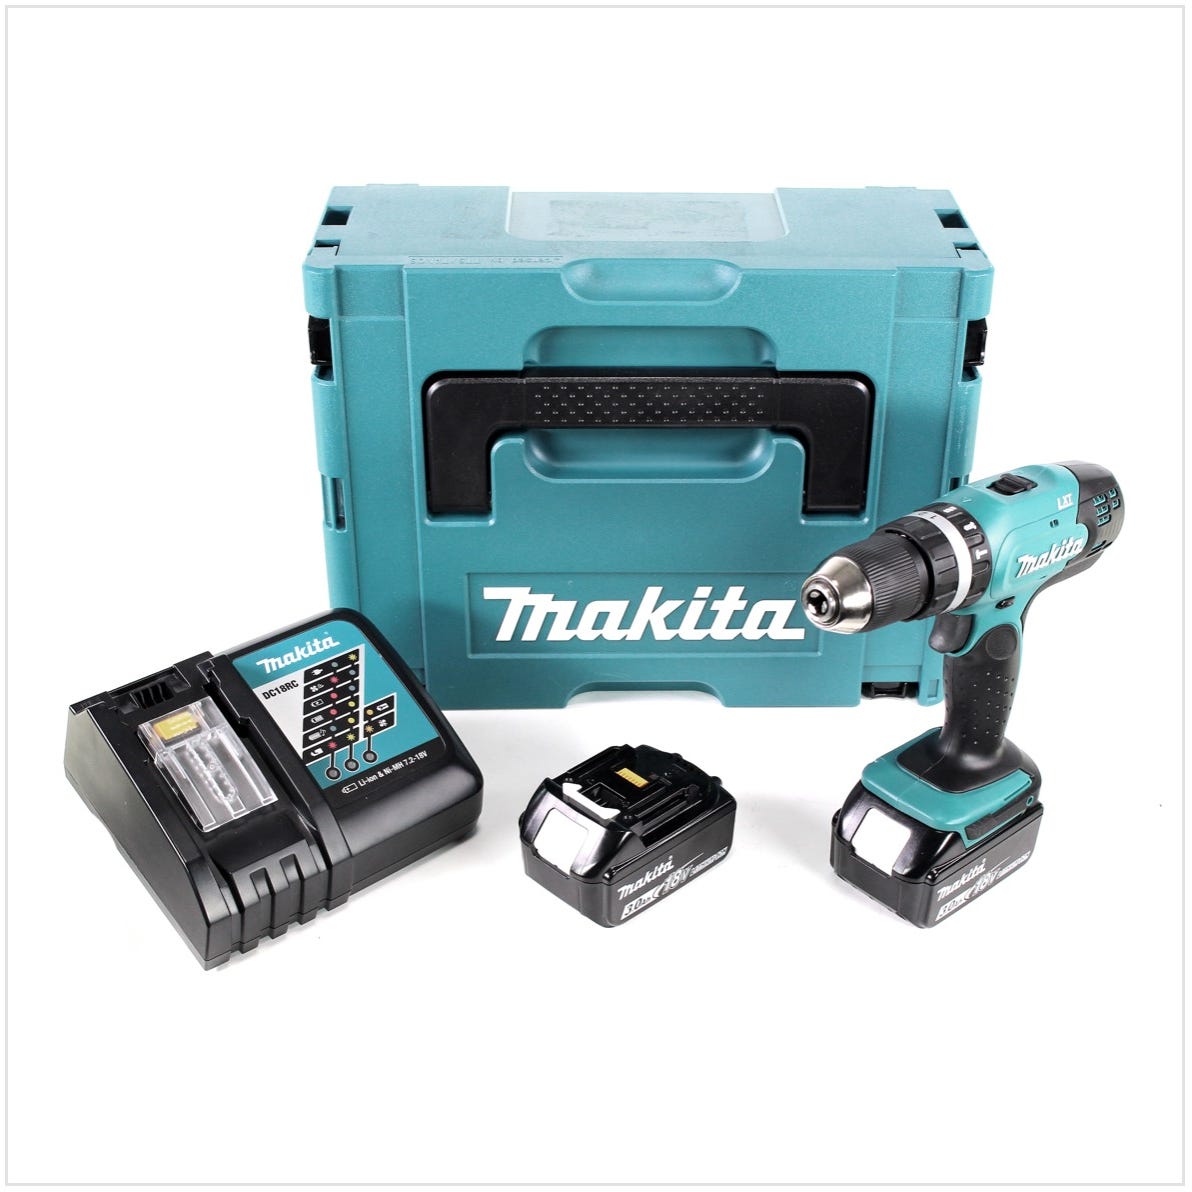 Makita DHP 453 RFJ 18 V Perceuse visseuse à percussion sans fil avec boîtier Makpac + 2x Batteries BL 1830 3,0 Ah + Chargeur DC18RC 0